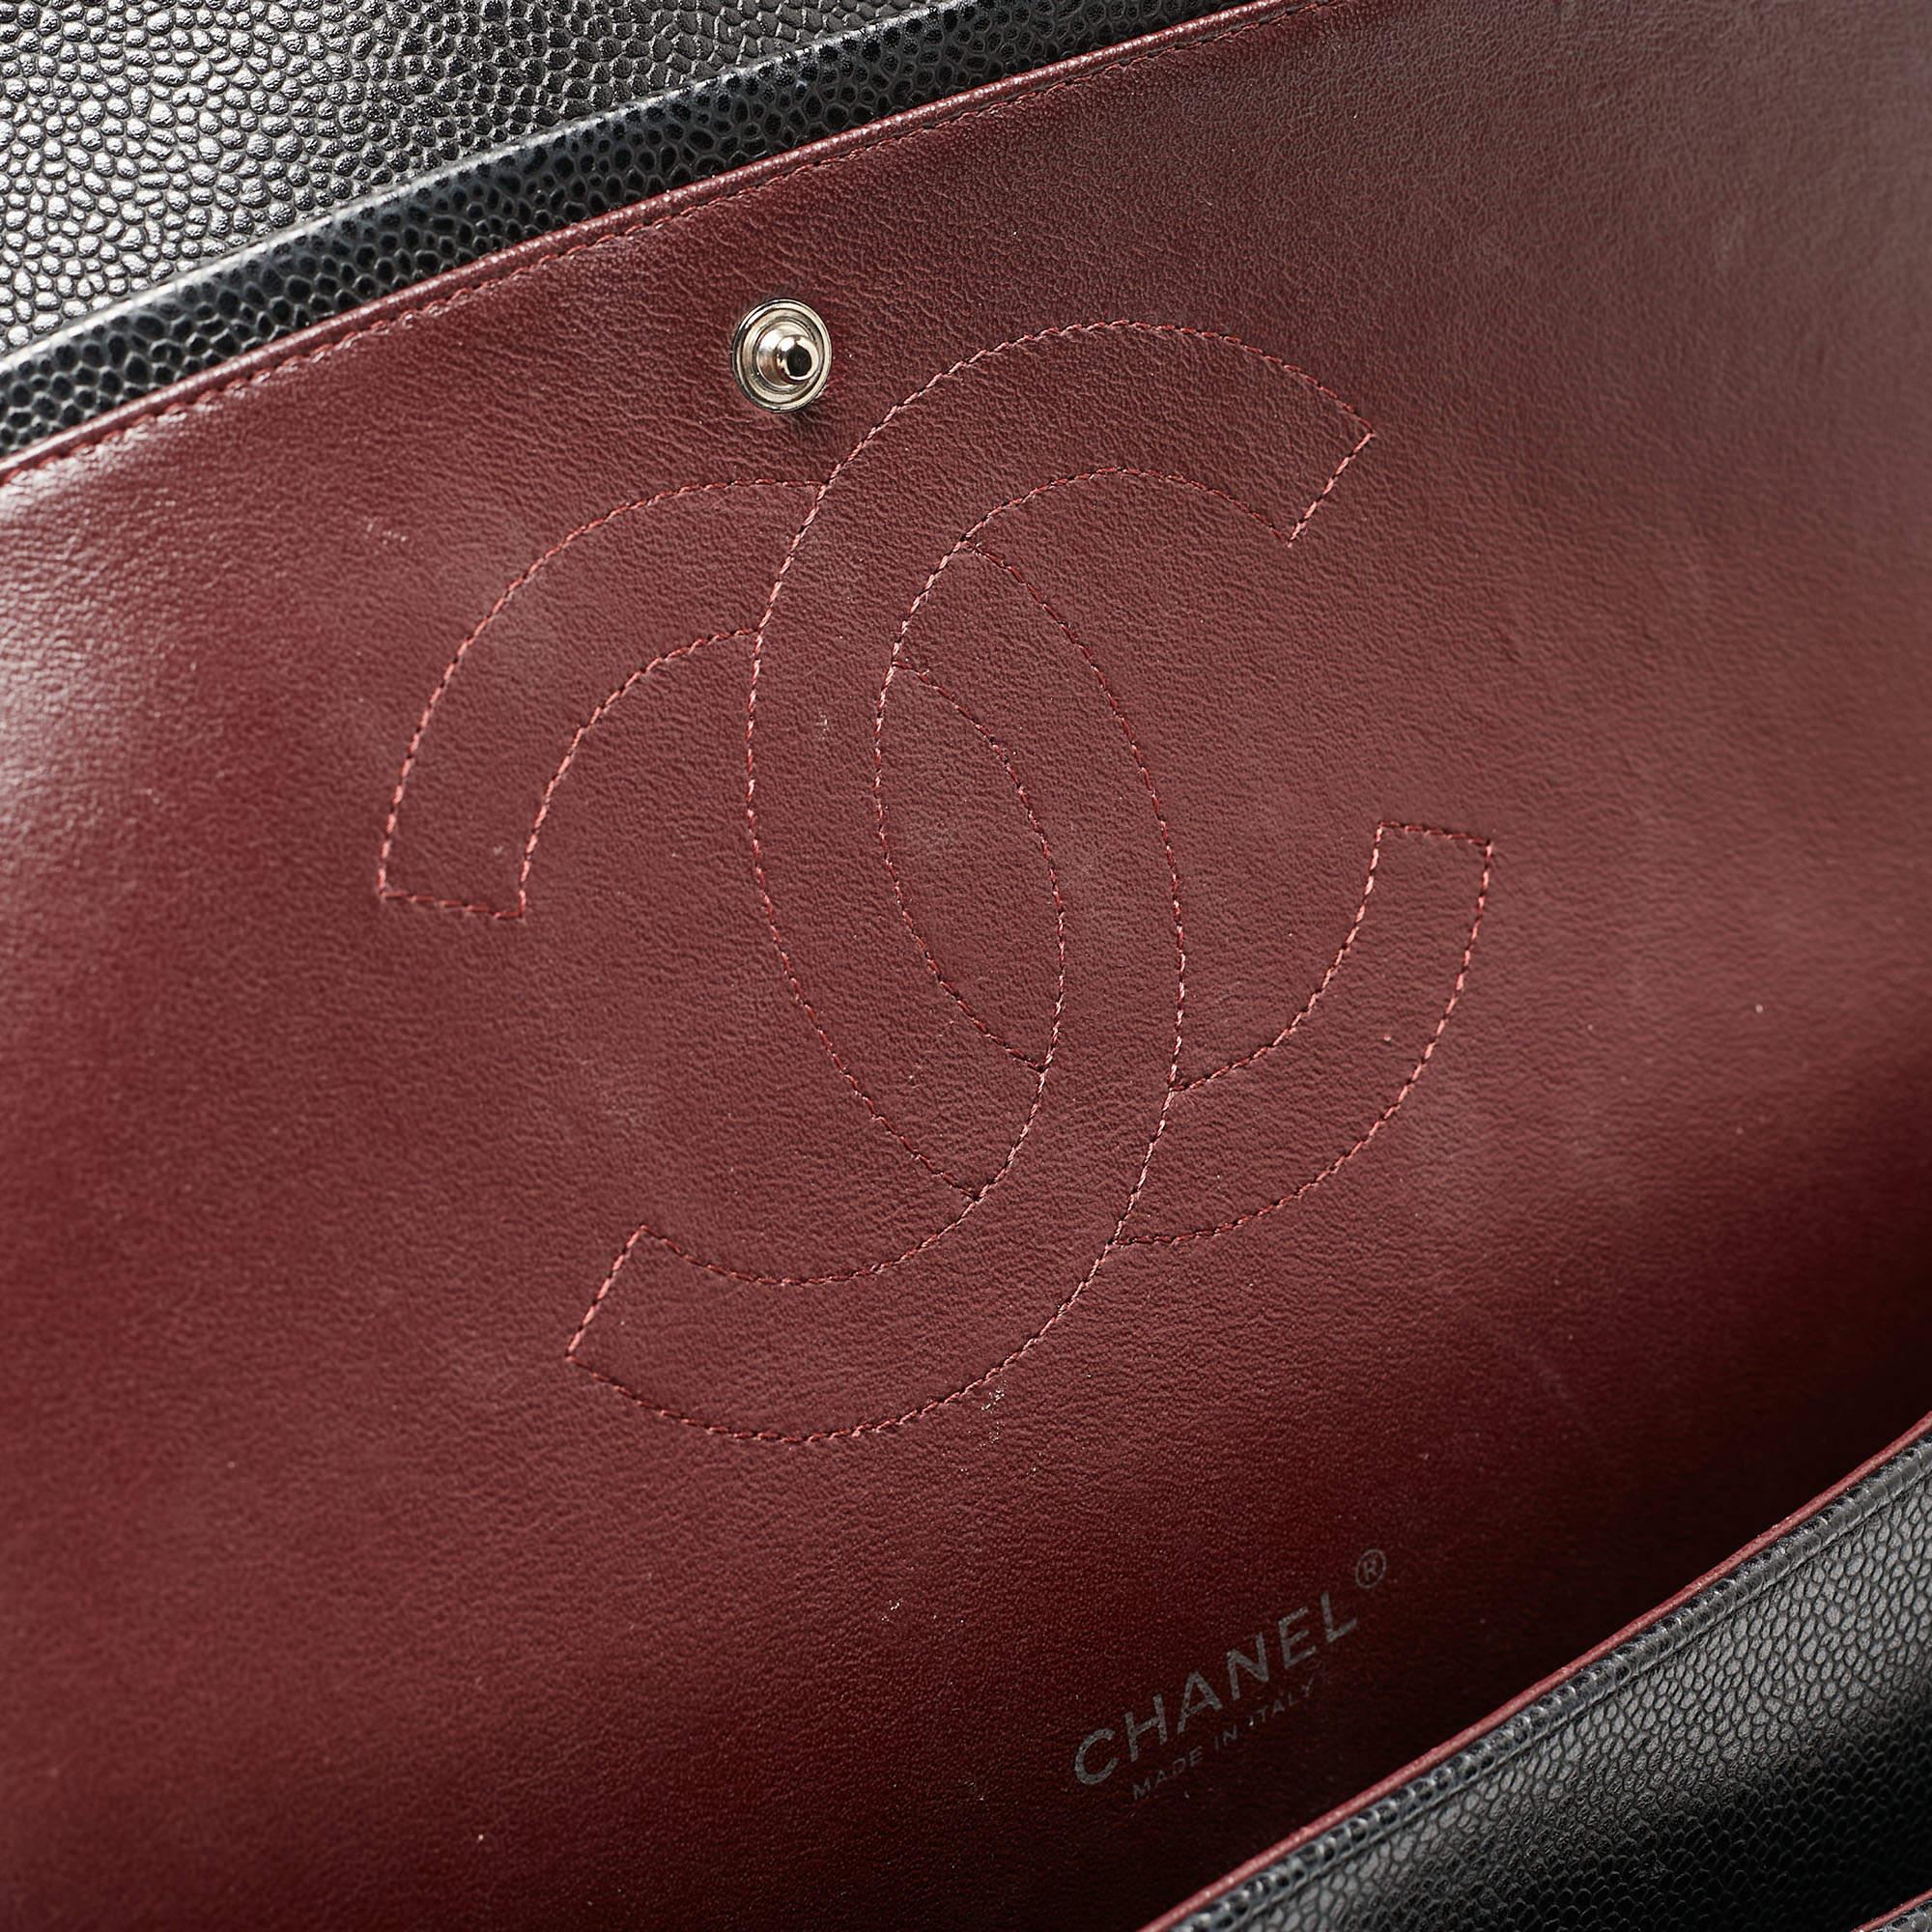 Chanel - Sac à double rabat classique Maxi en cuir texturé noir matelassé 10